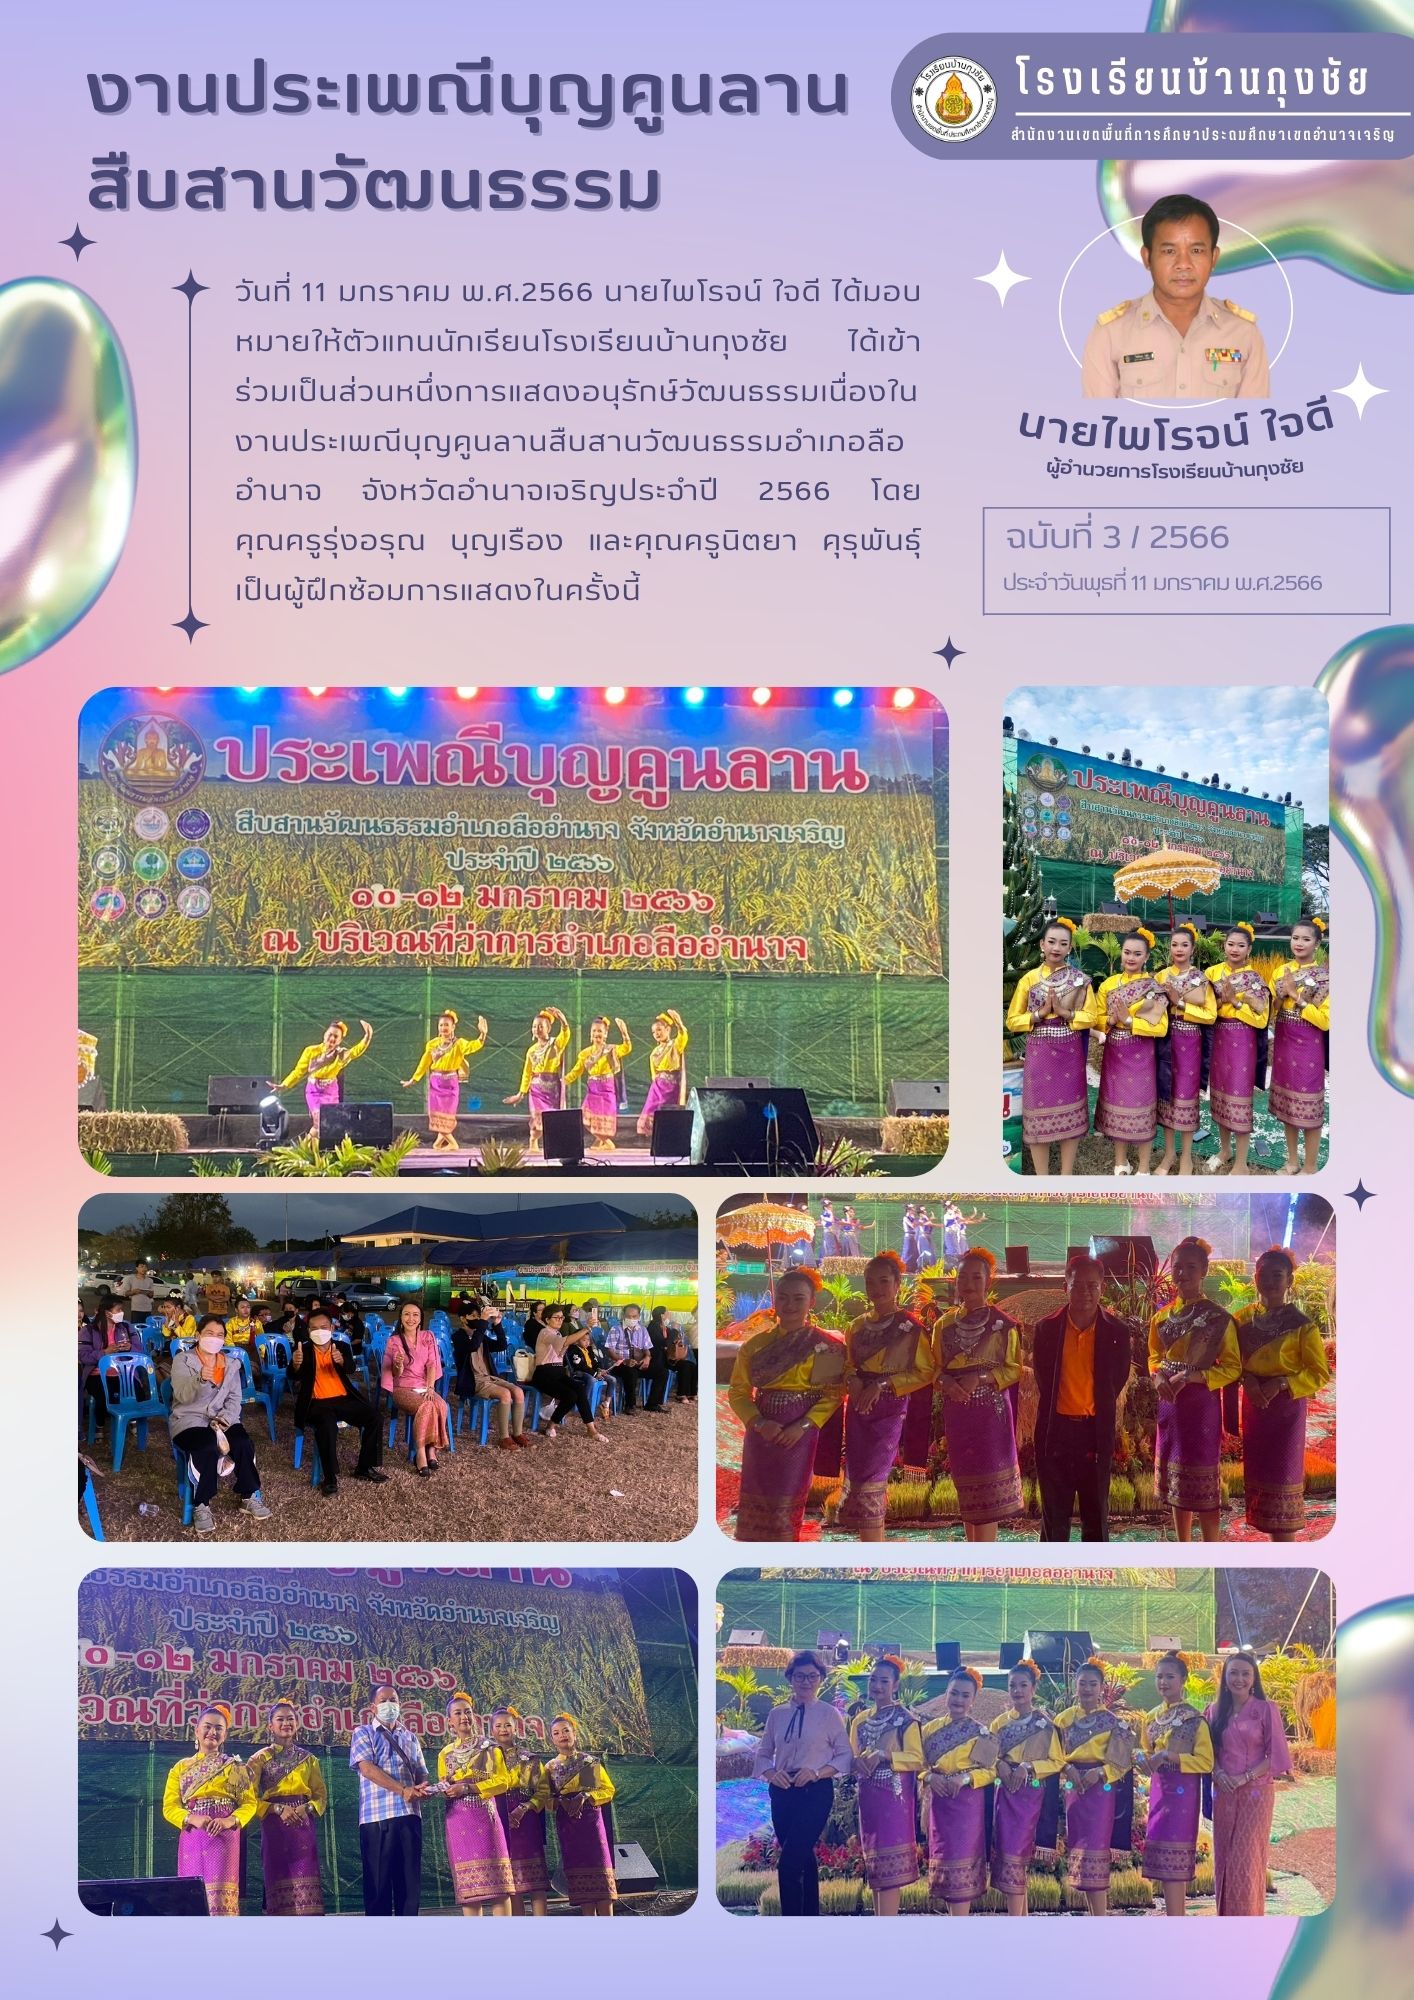  ชมพู นักสร้างสรรค์คอนเทนต์ เรซูเม่ภาษาไทย (2).jpg